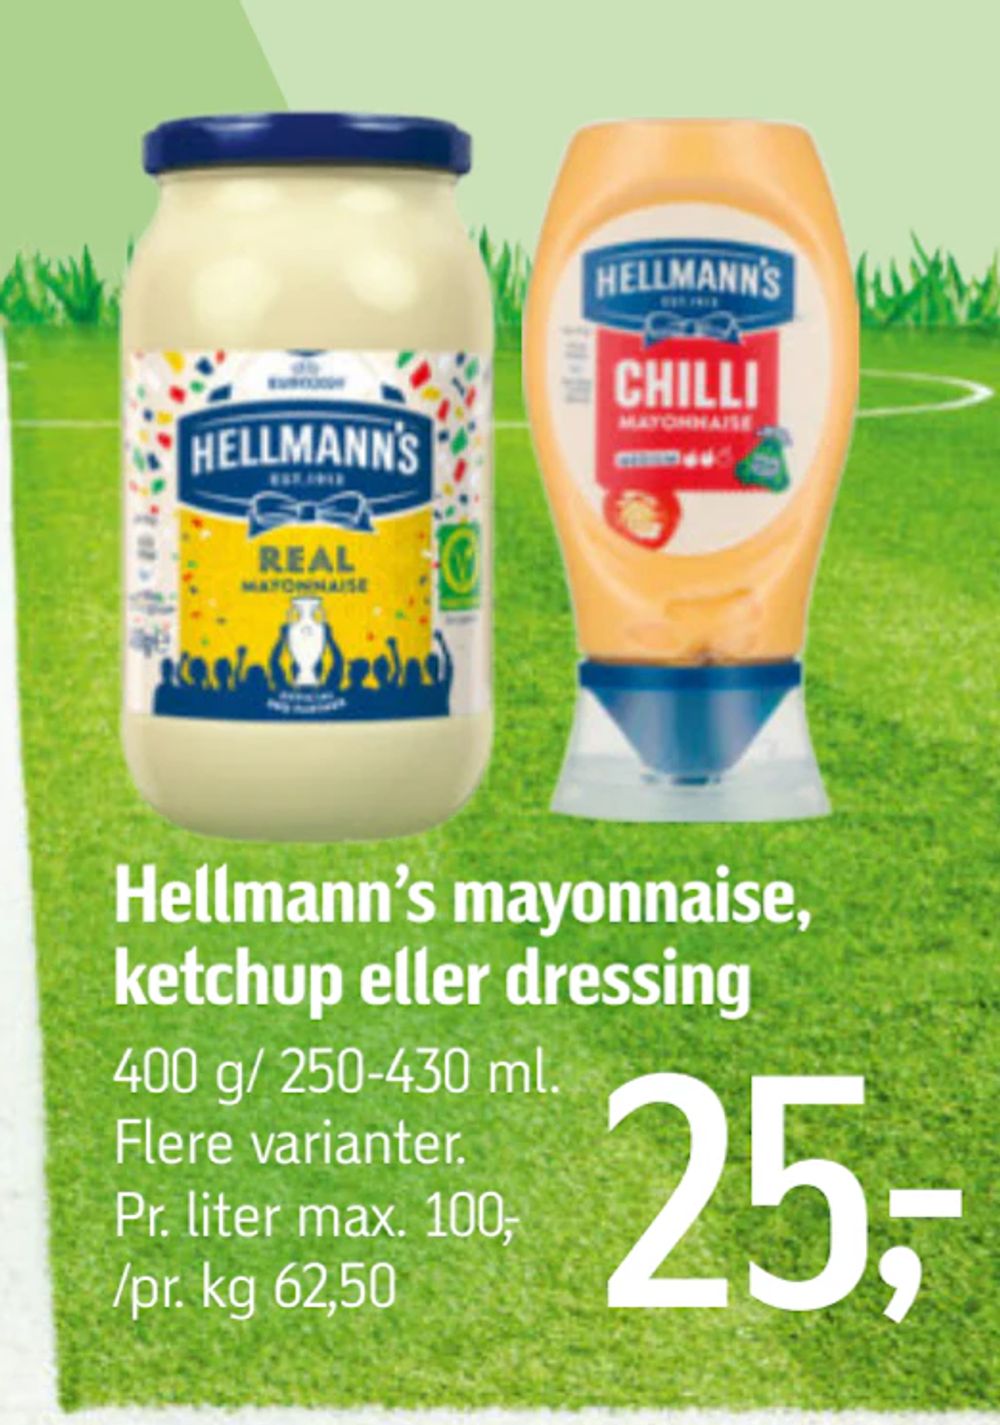 Tilbud på Hellmann’s mayonnaise, ketchup eller dressing fra føtex til 25 kr.